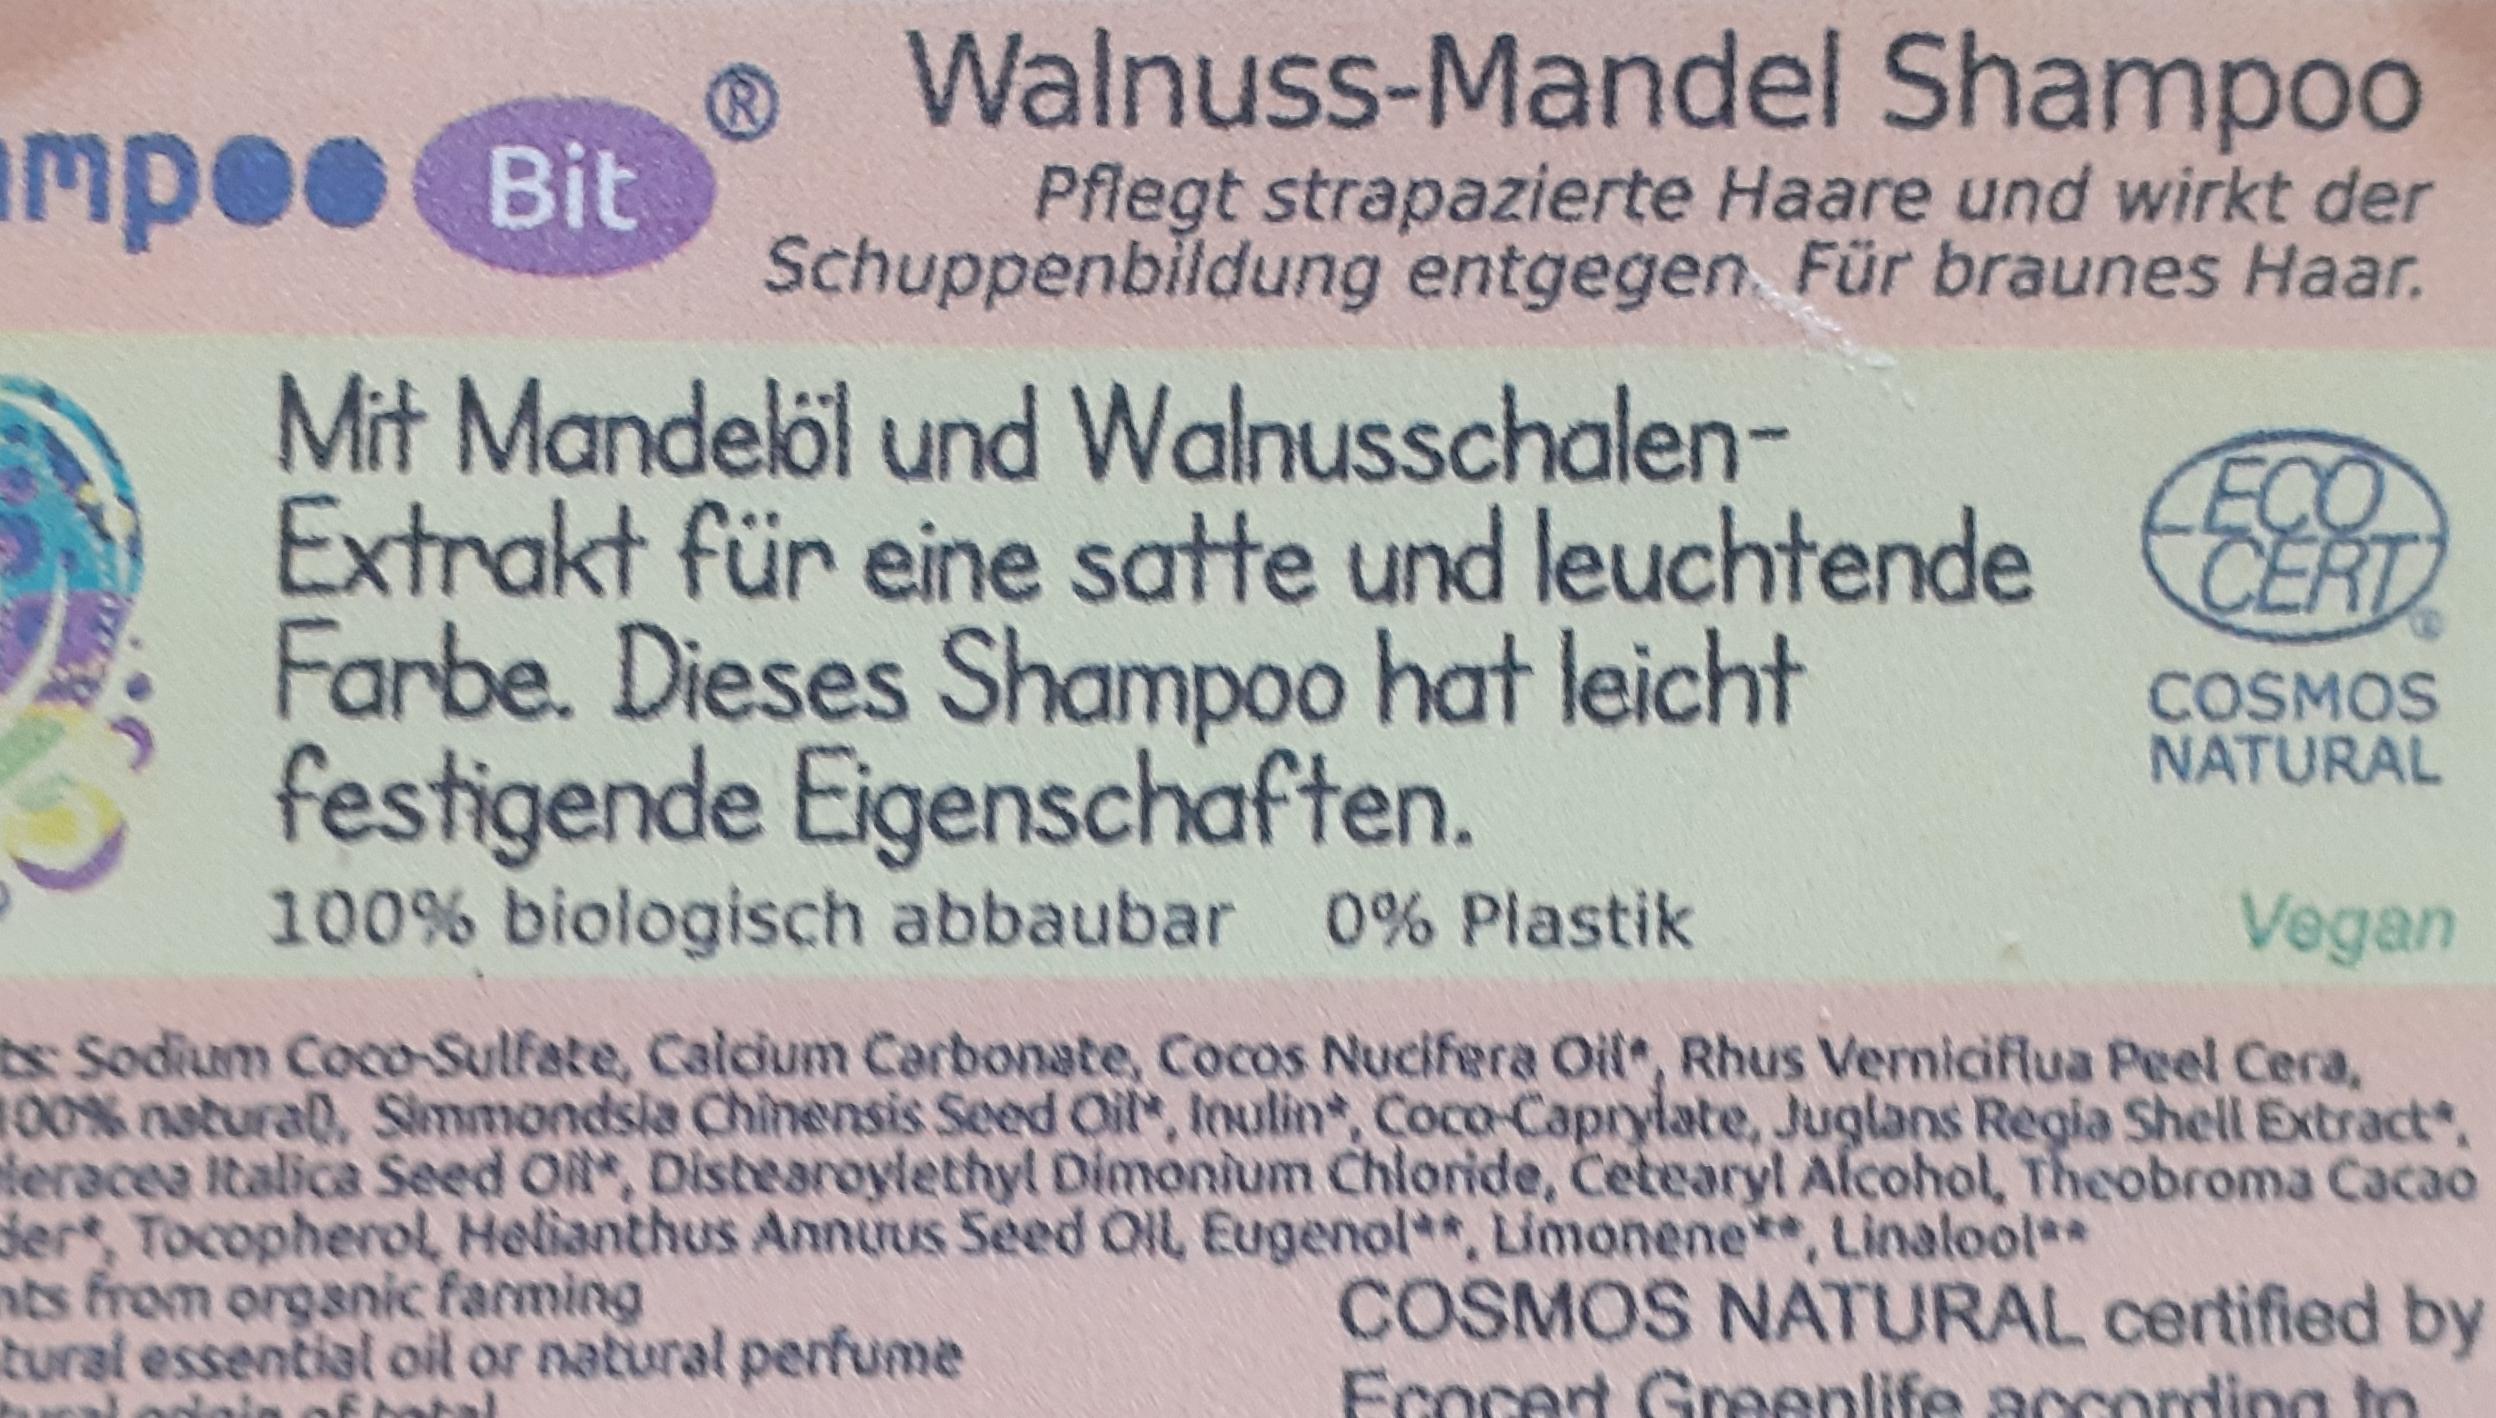 Shampoo Bit von Rosenrot, Walnuss Mandel